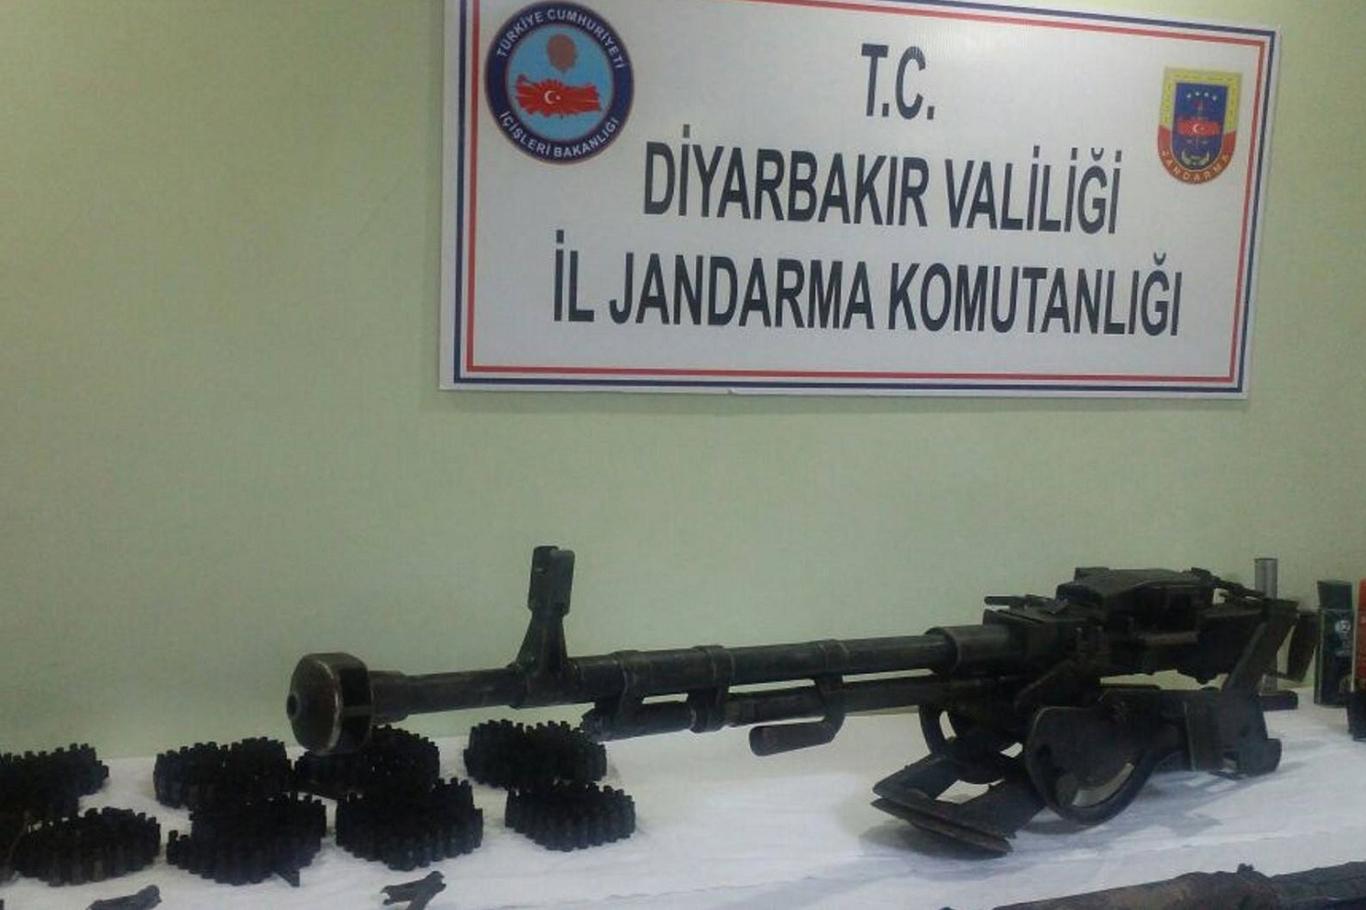 Diyarbakır'da uçaksavar silahı ele geçirildi